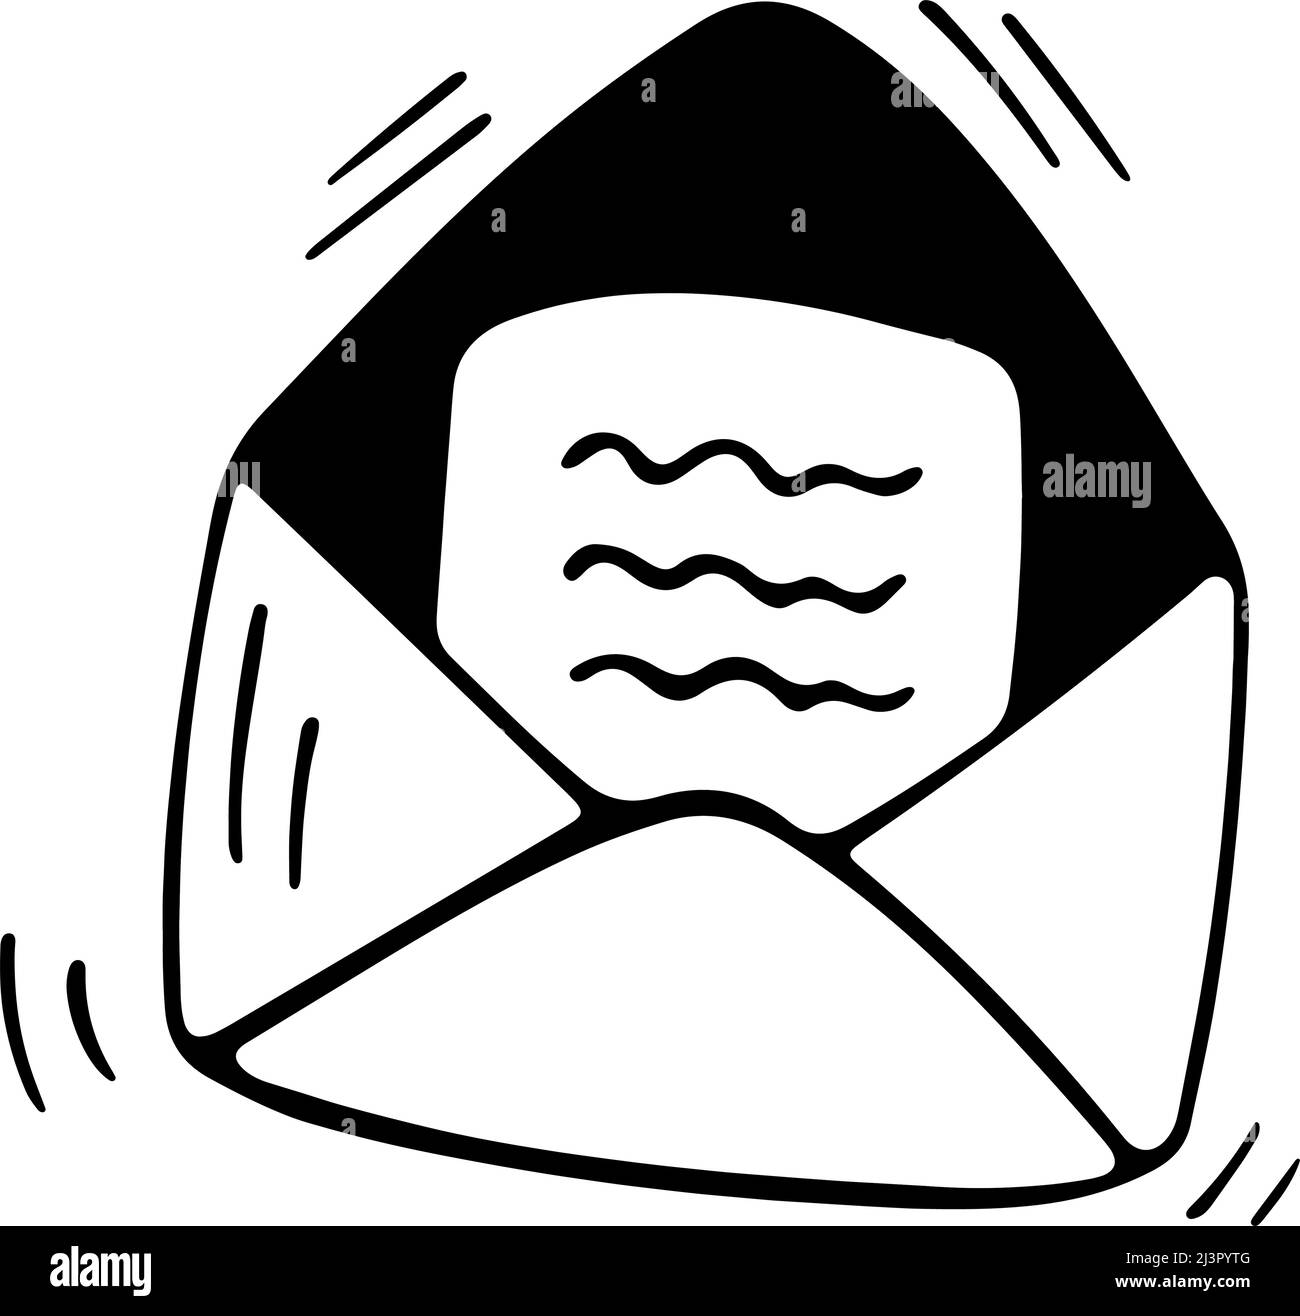 Doodle-Vektor-Briefumschlag. Handgezeichnetes Logo oder Symbol mit dünner schwarzer Linie Stock Vektor